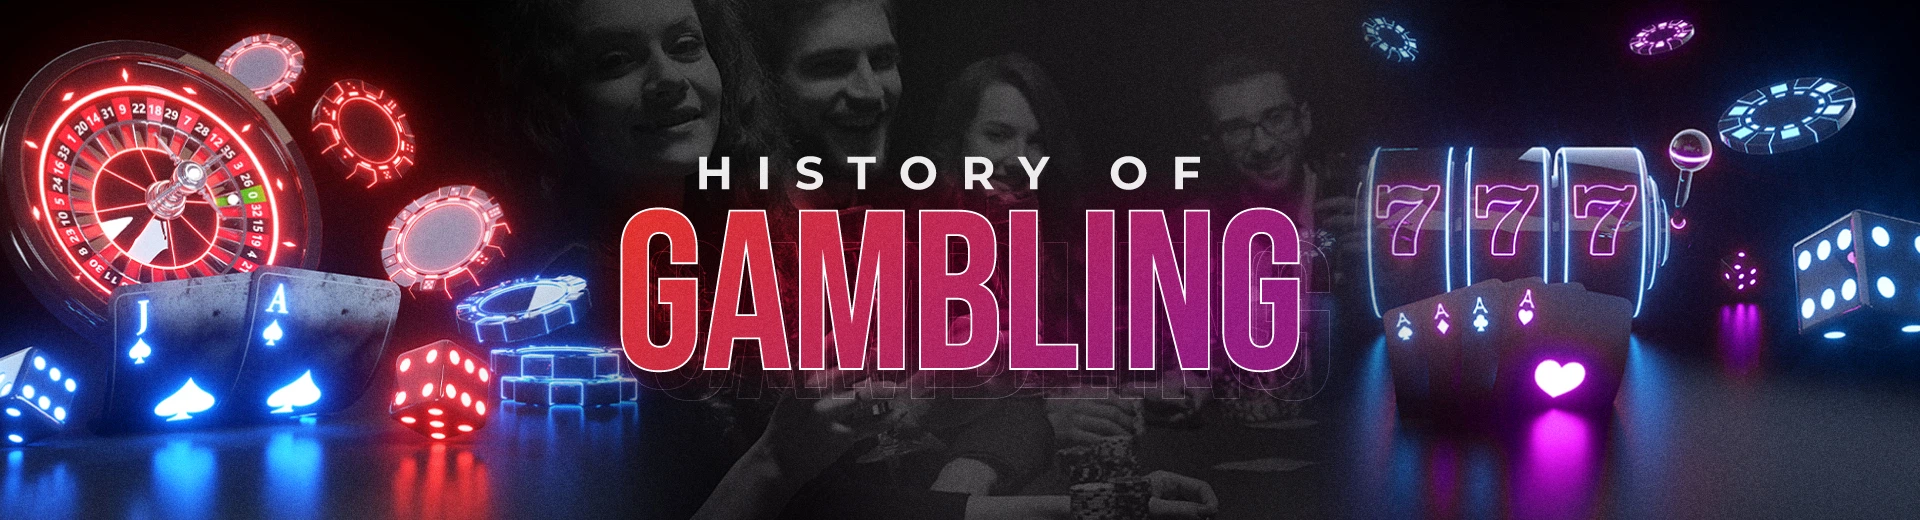 The History of Gambling in OKBET Online Casino - OKBET online games